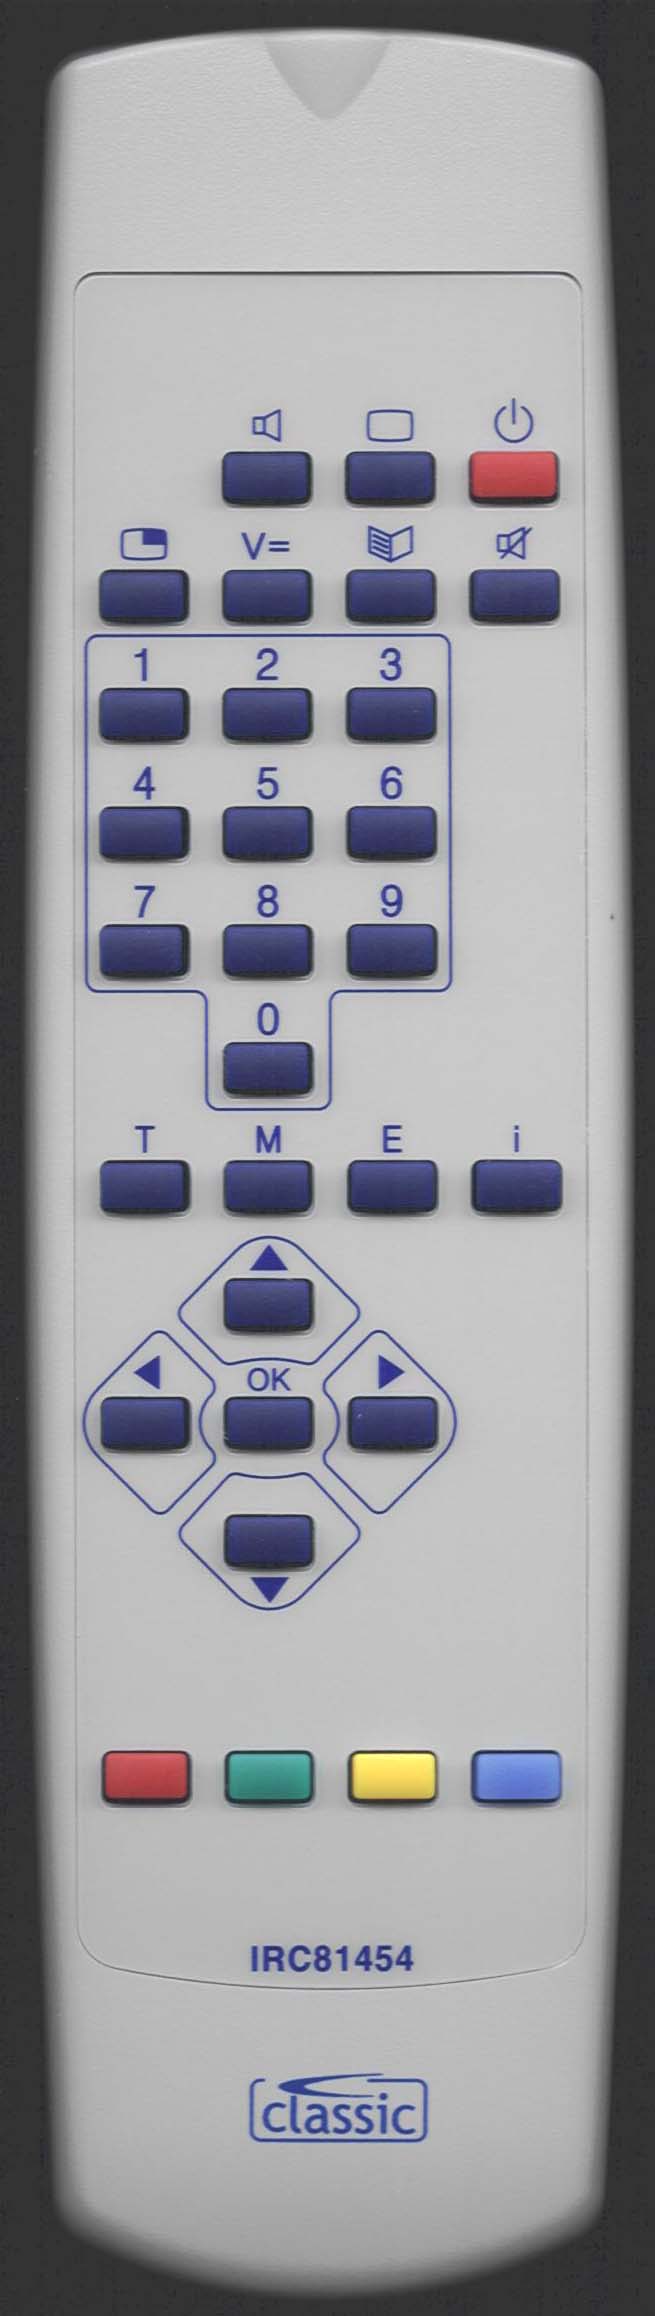 Loewe 263-87000.052 Remote Control